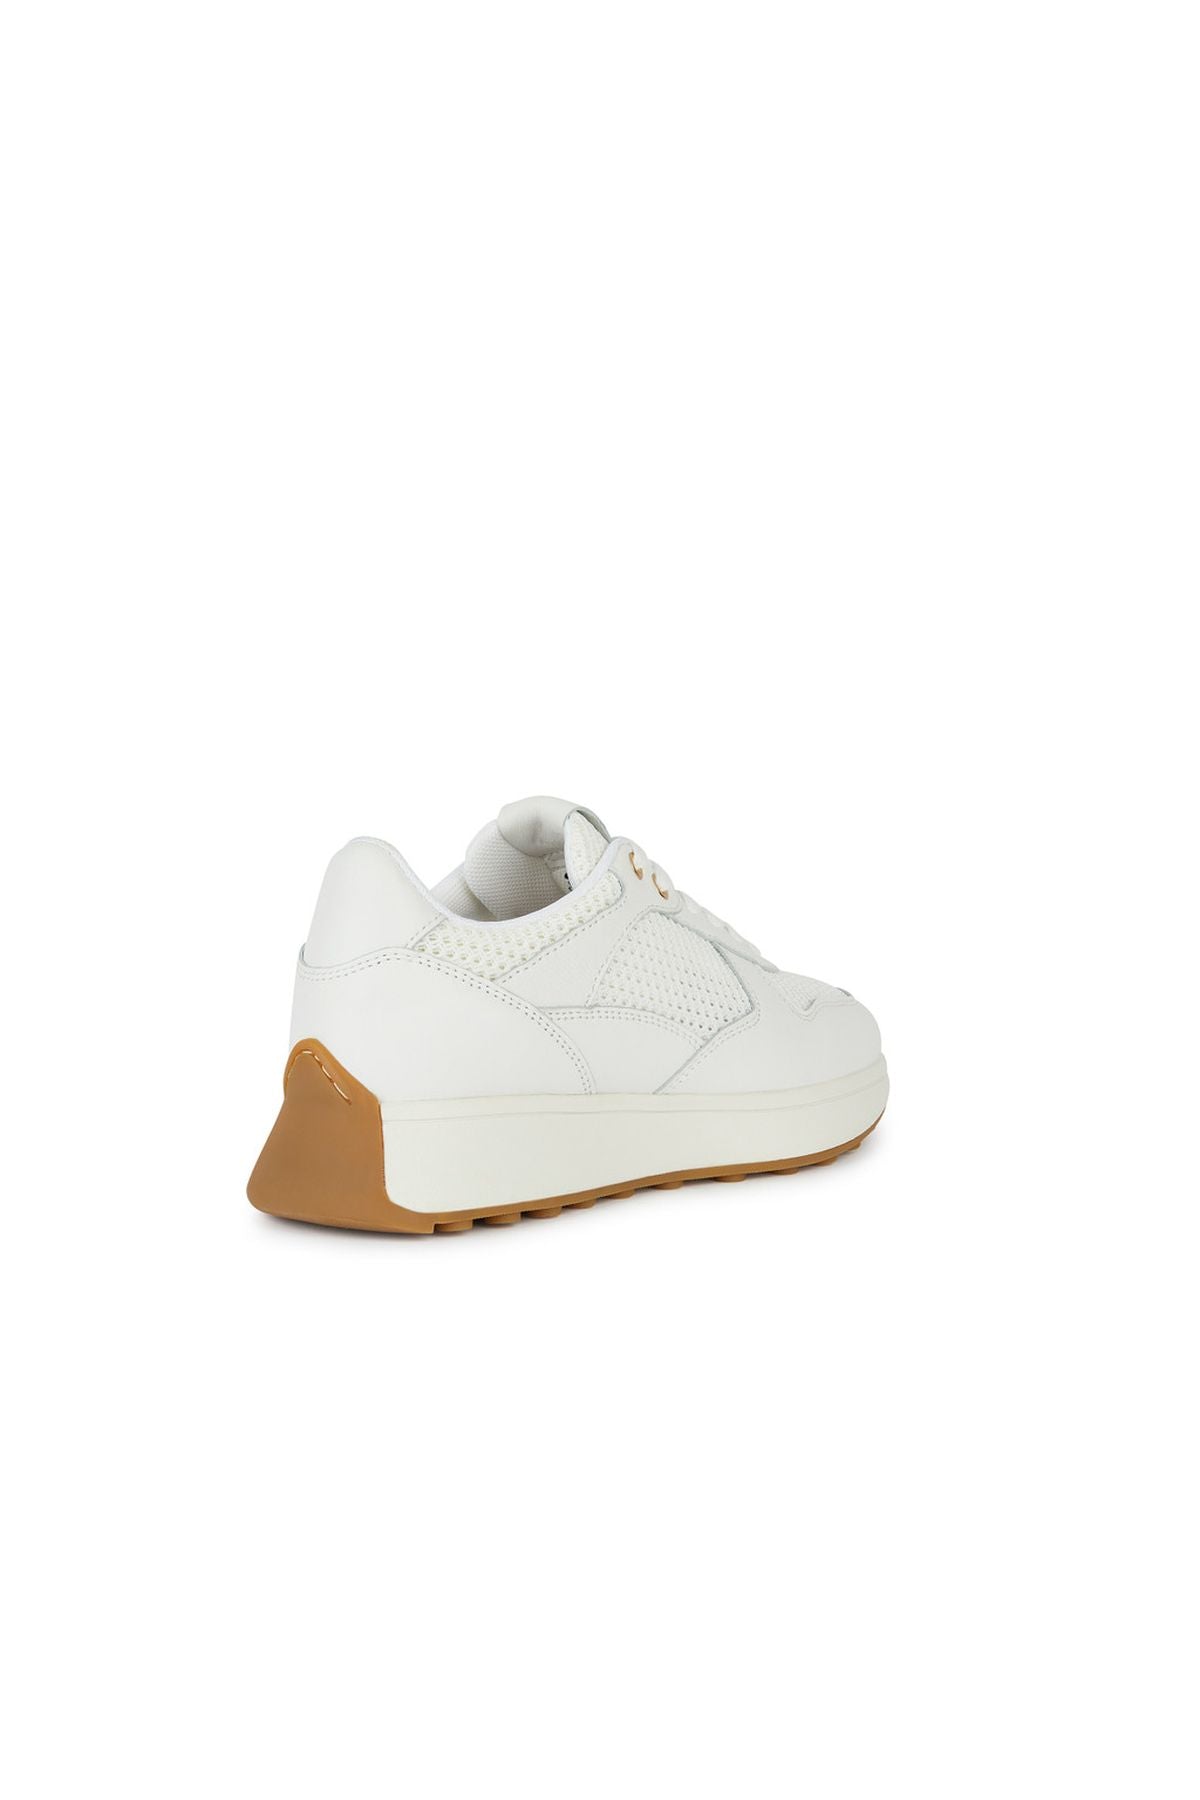 Geox Kadın Beyaz Amabel Bağcıklı Deri Sneaker